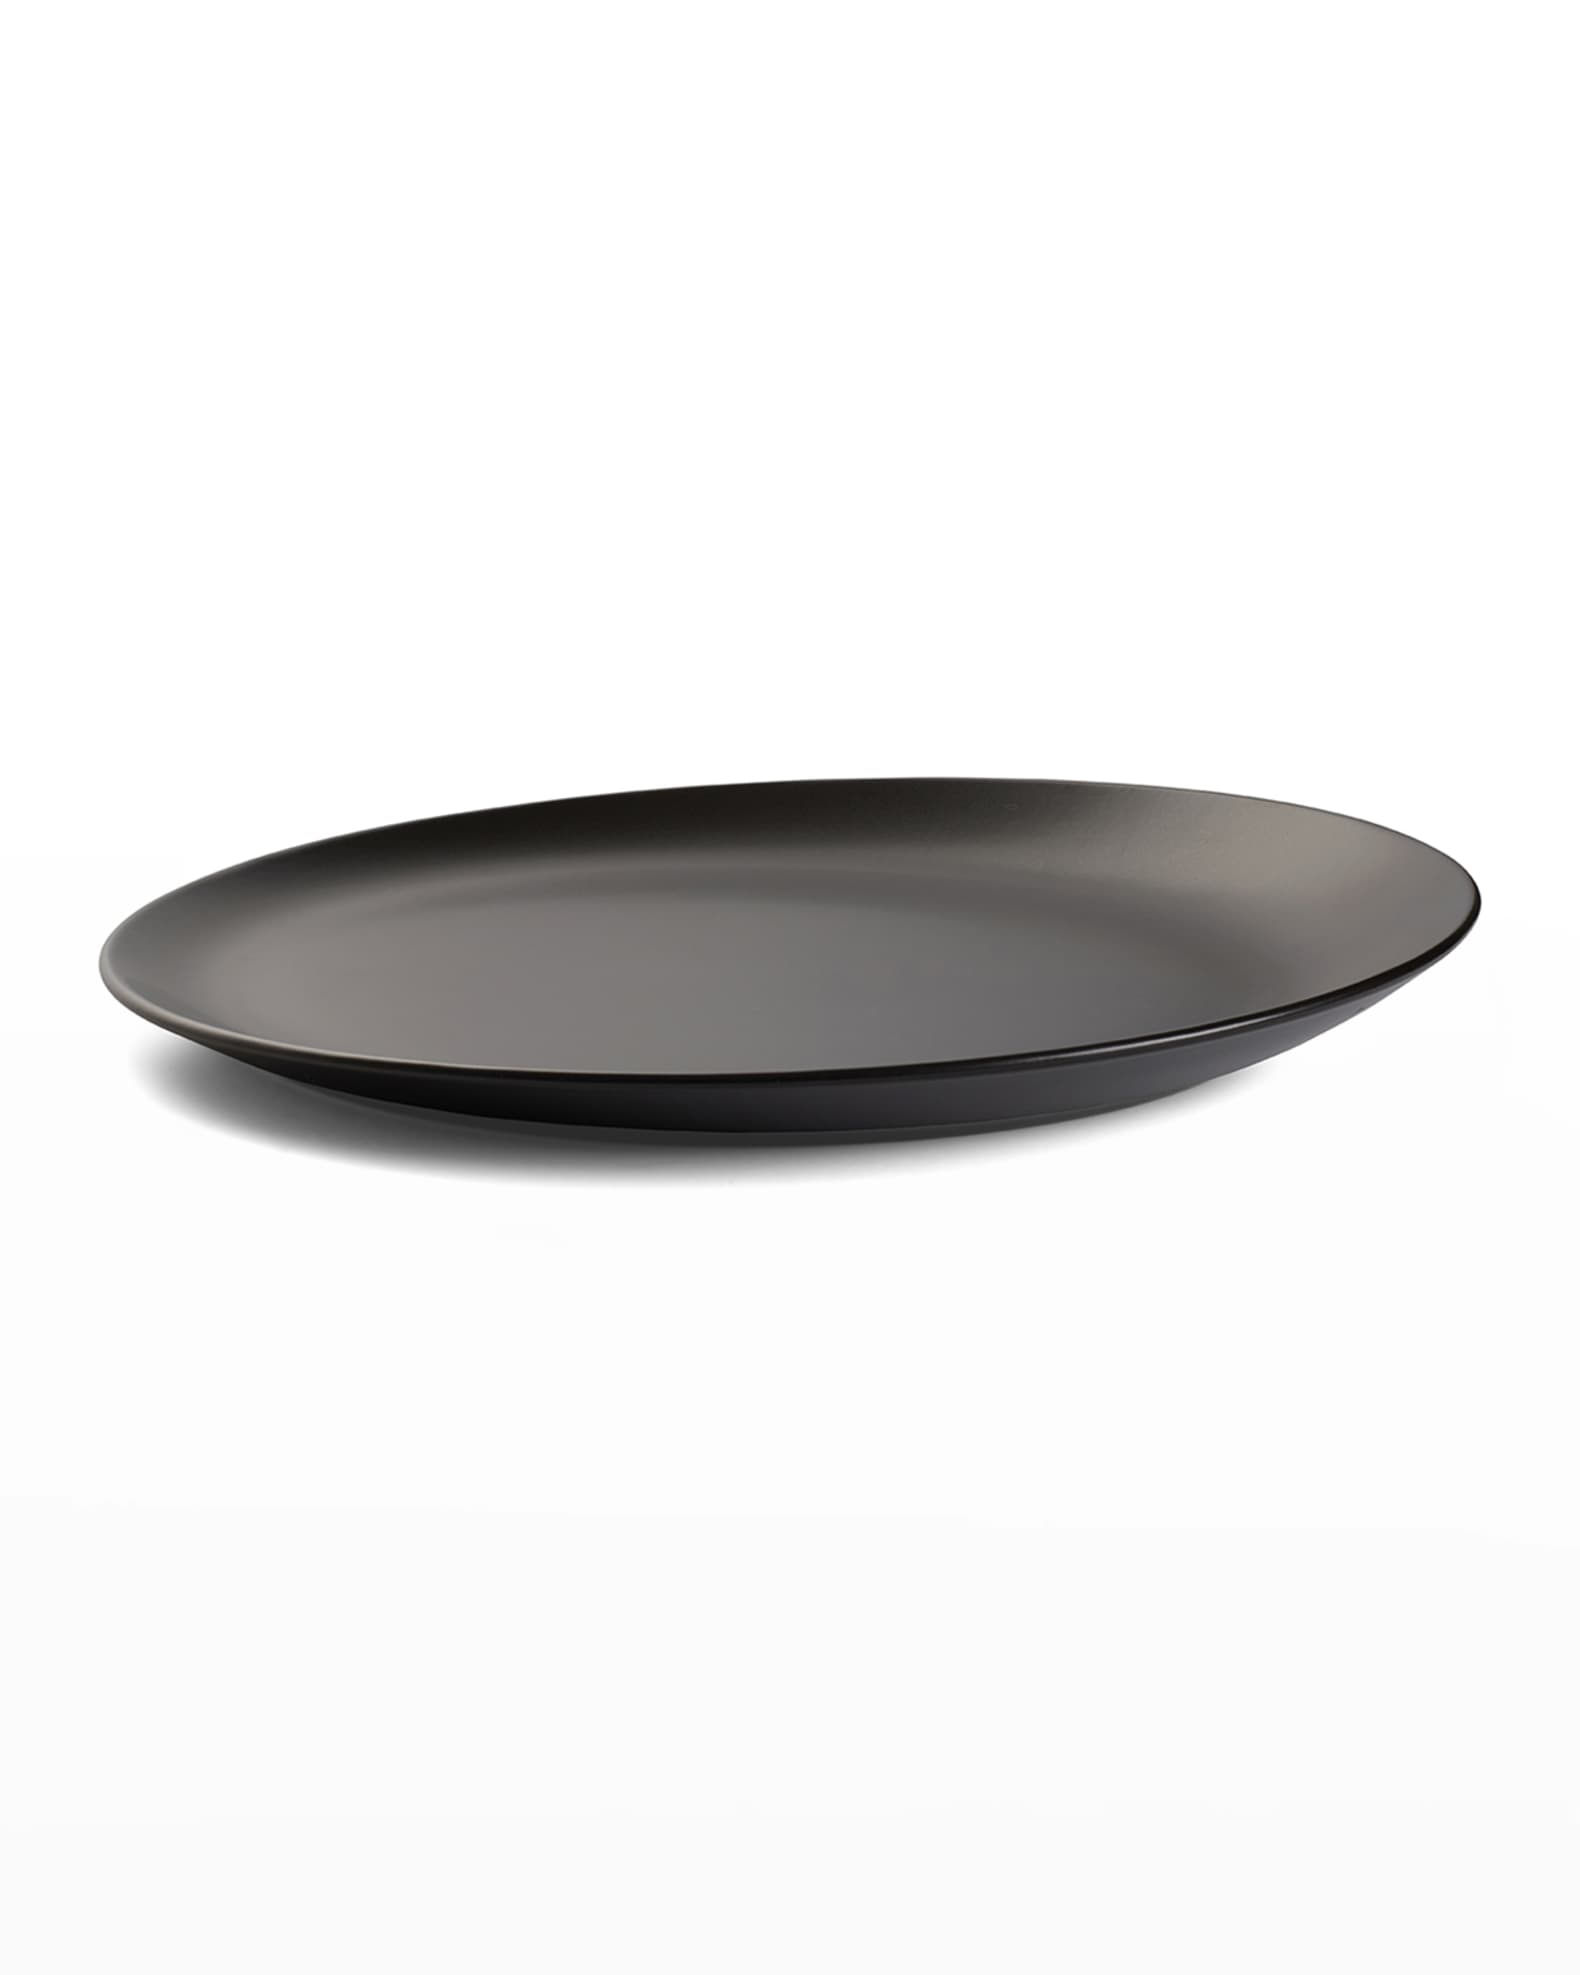 Nambe Platter, Celestial Black